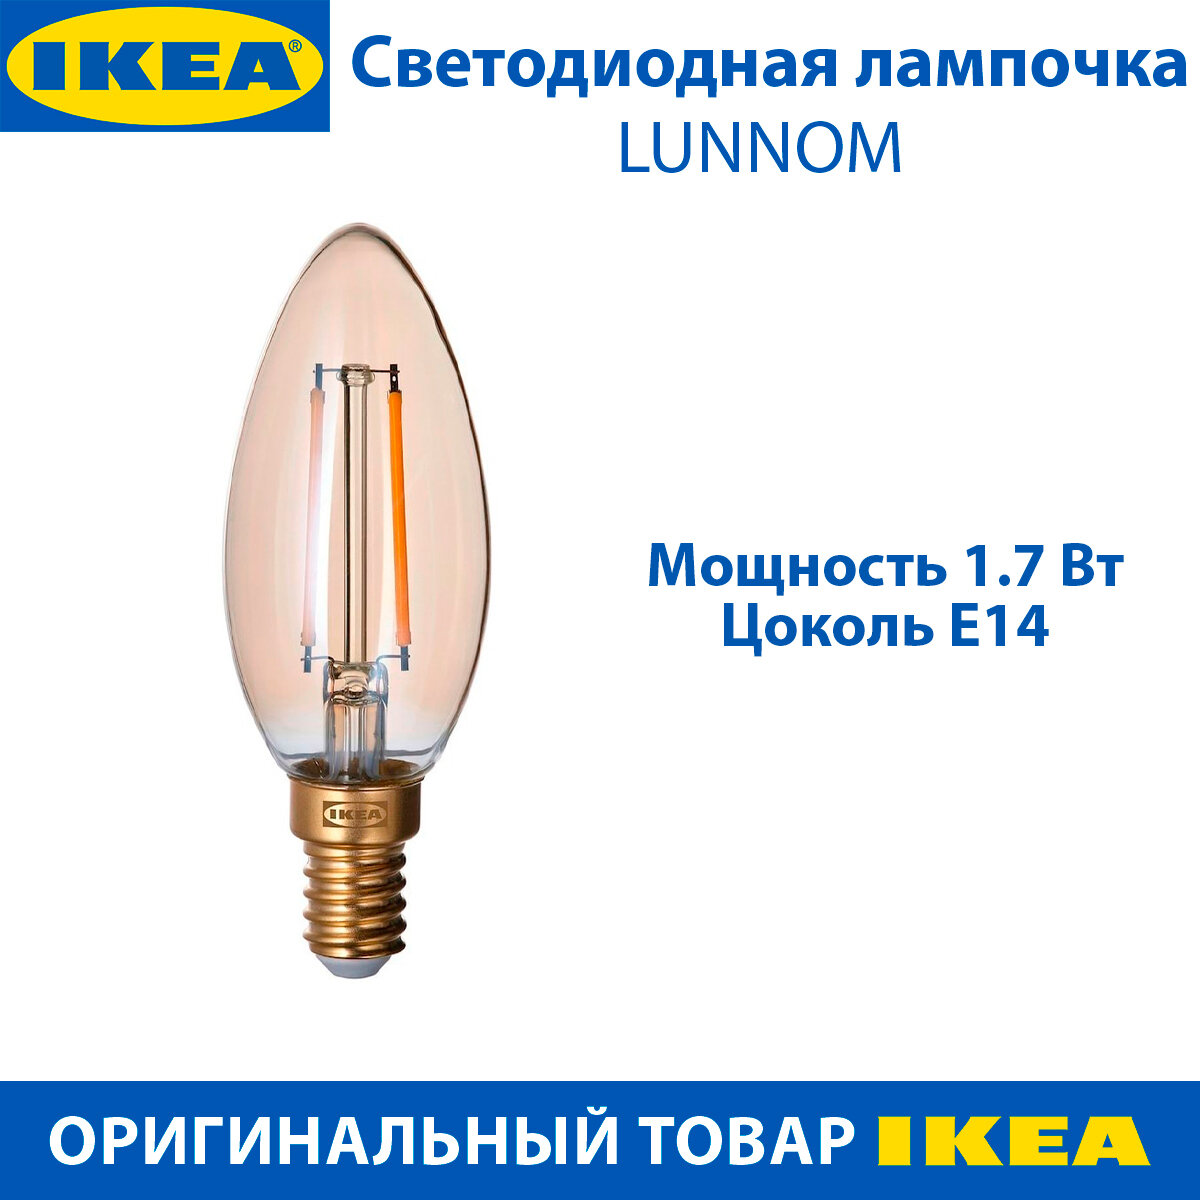 Светодиодная лампочка IKEA LUNNOM (люнном), E14, 210 люмен, регулируемая, теплый свет, 1.7 Вт, 1 шт